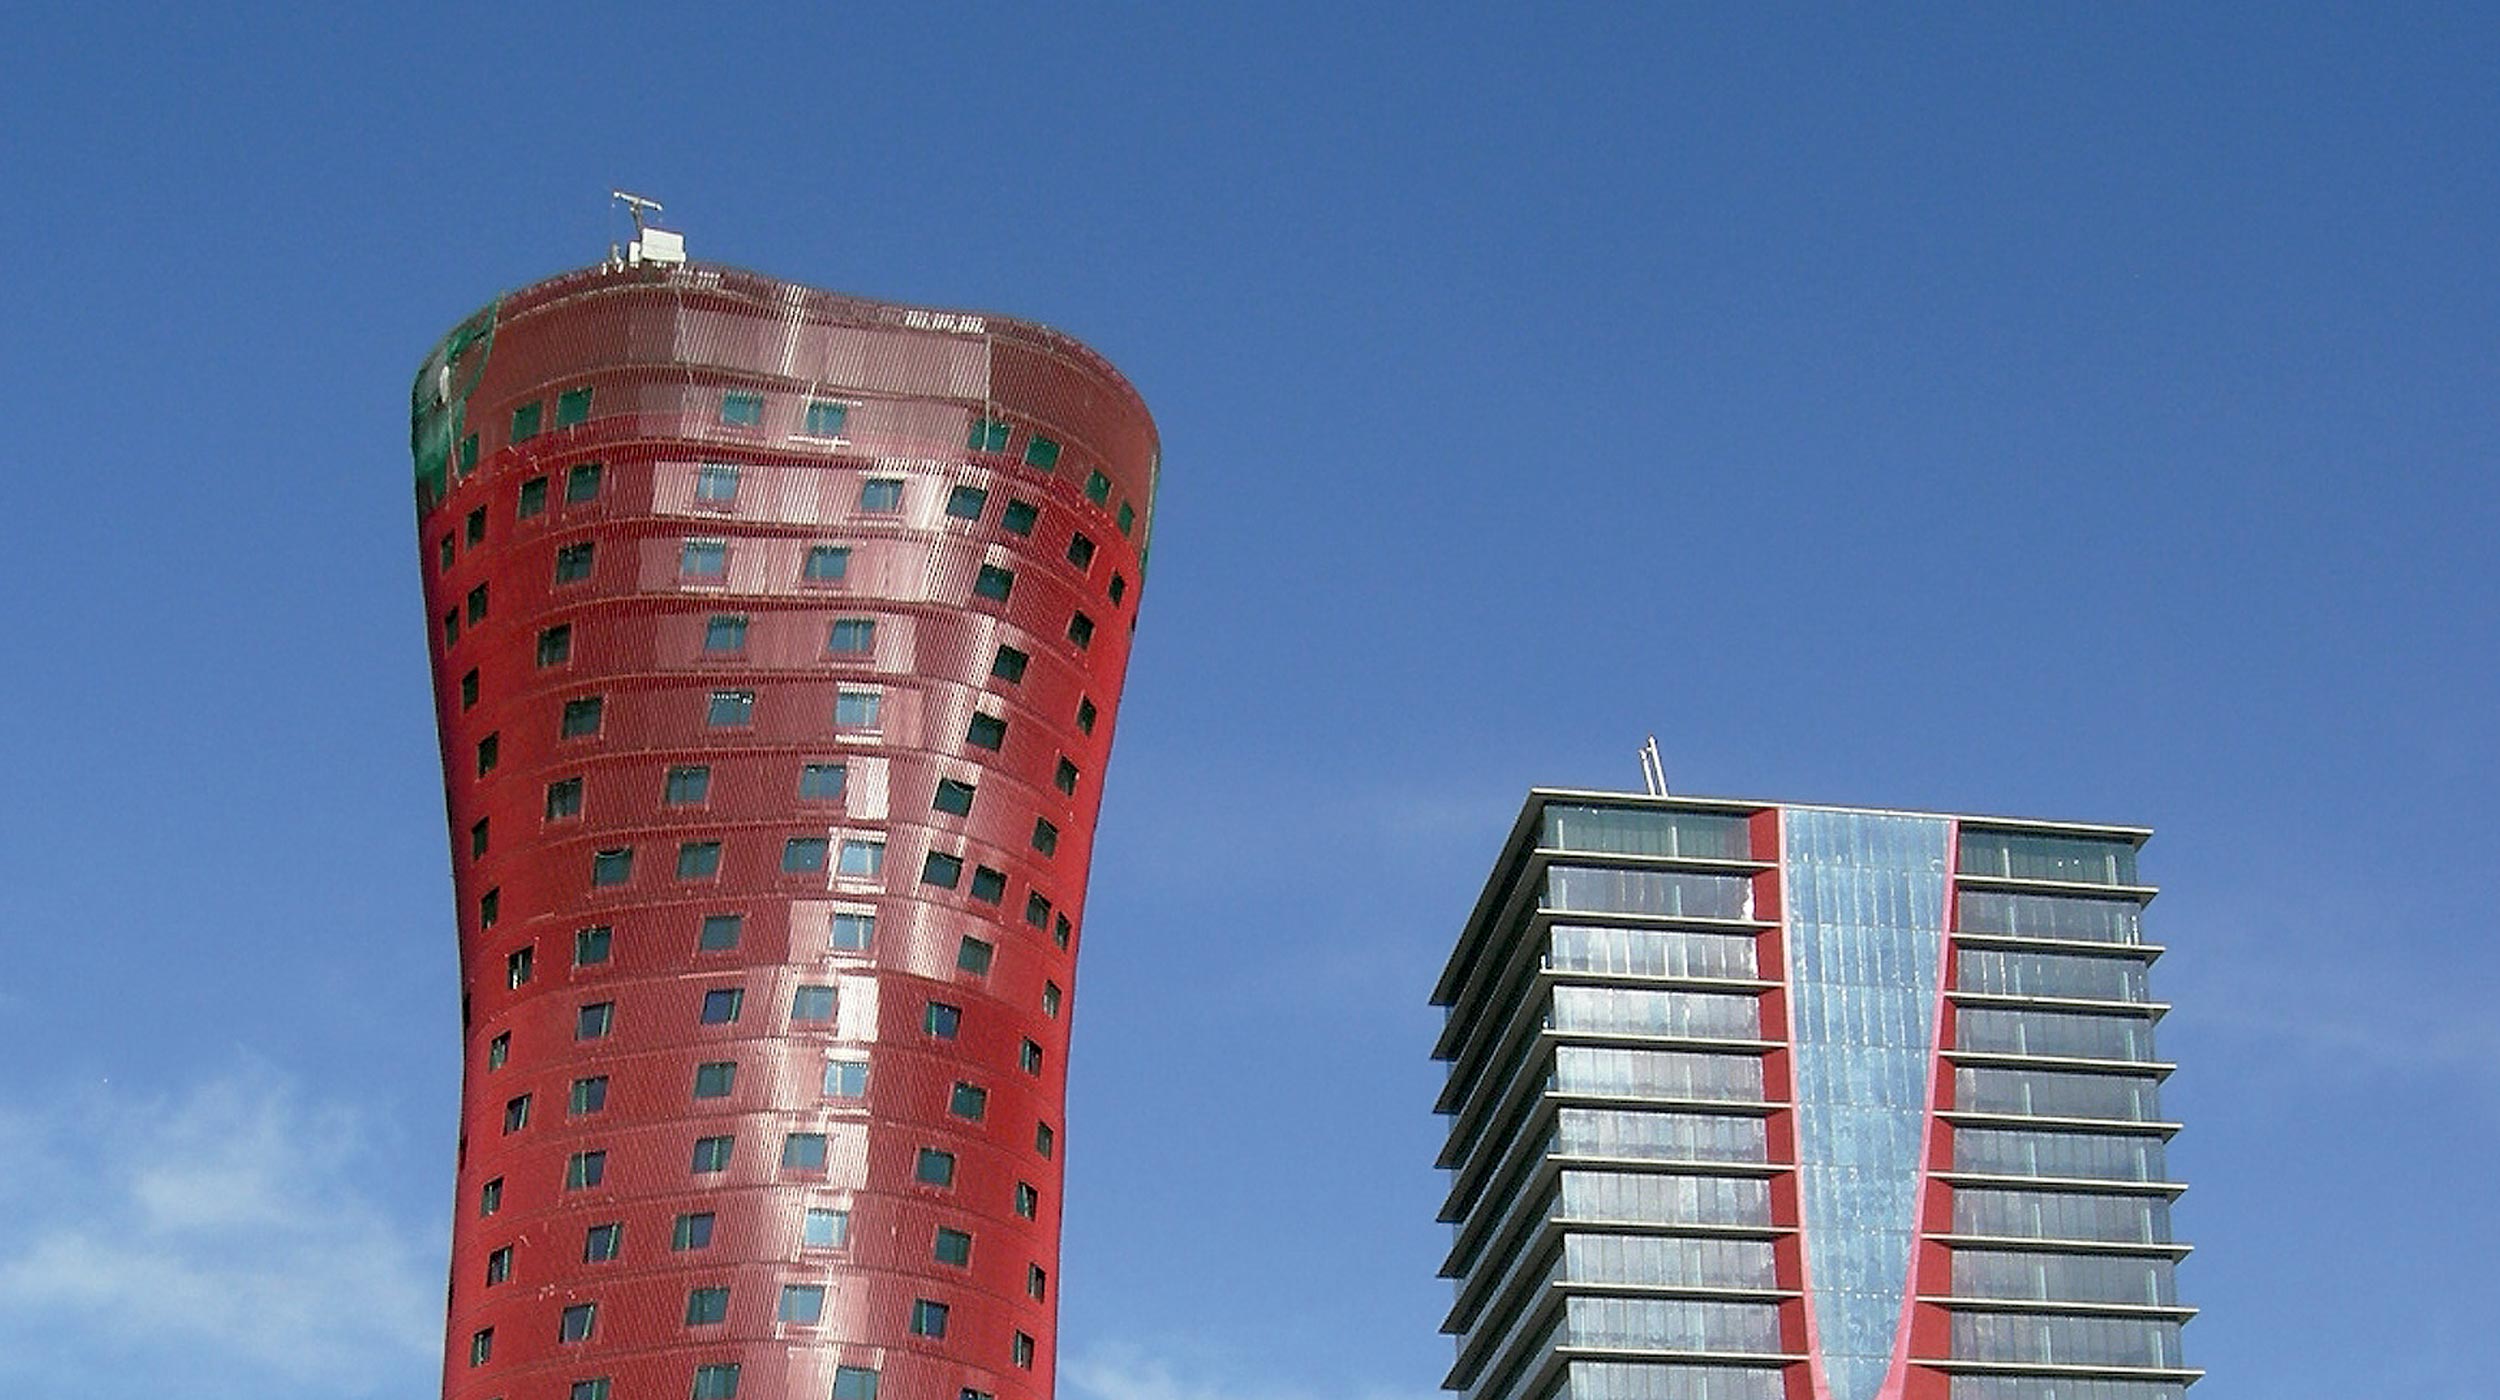 Każdy z dwóch wieżowców o wysokości ponad 120 m pełni inną funkcję: jeden jest hotelem a drugi budynkiem biurowym o powierzchni powyżej 40.000 m².